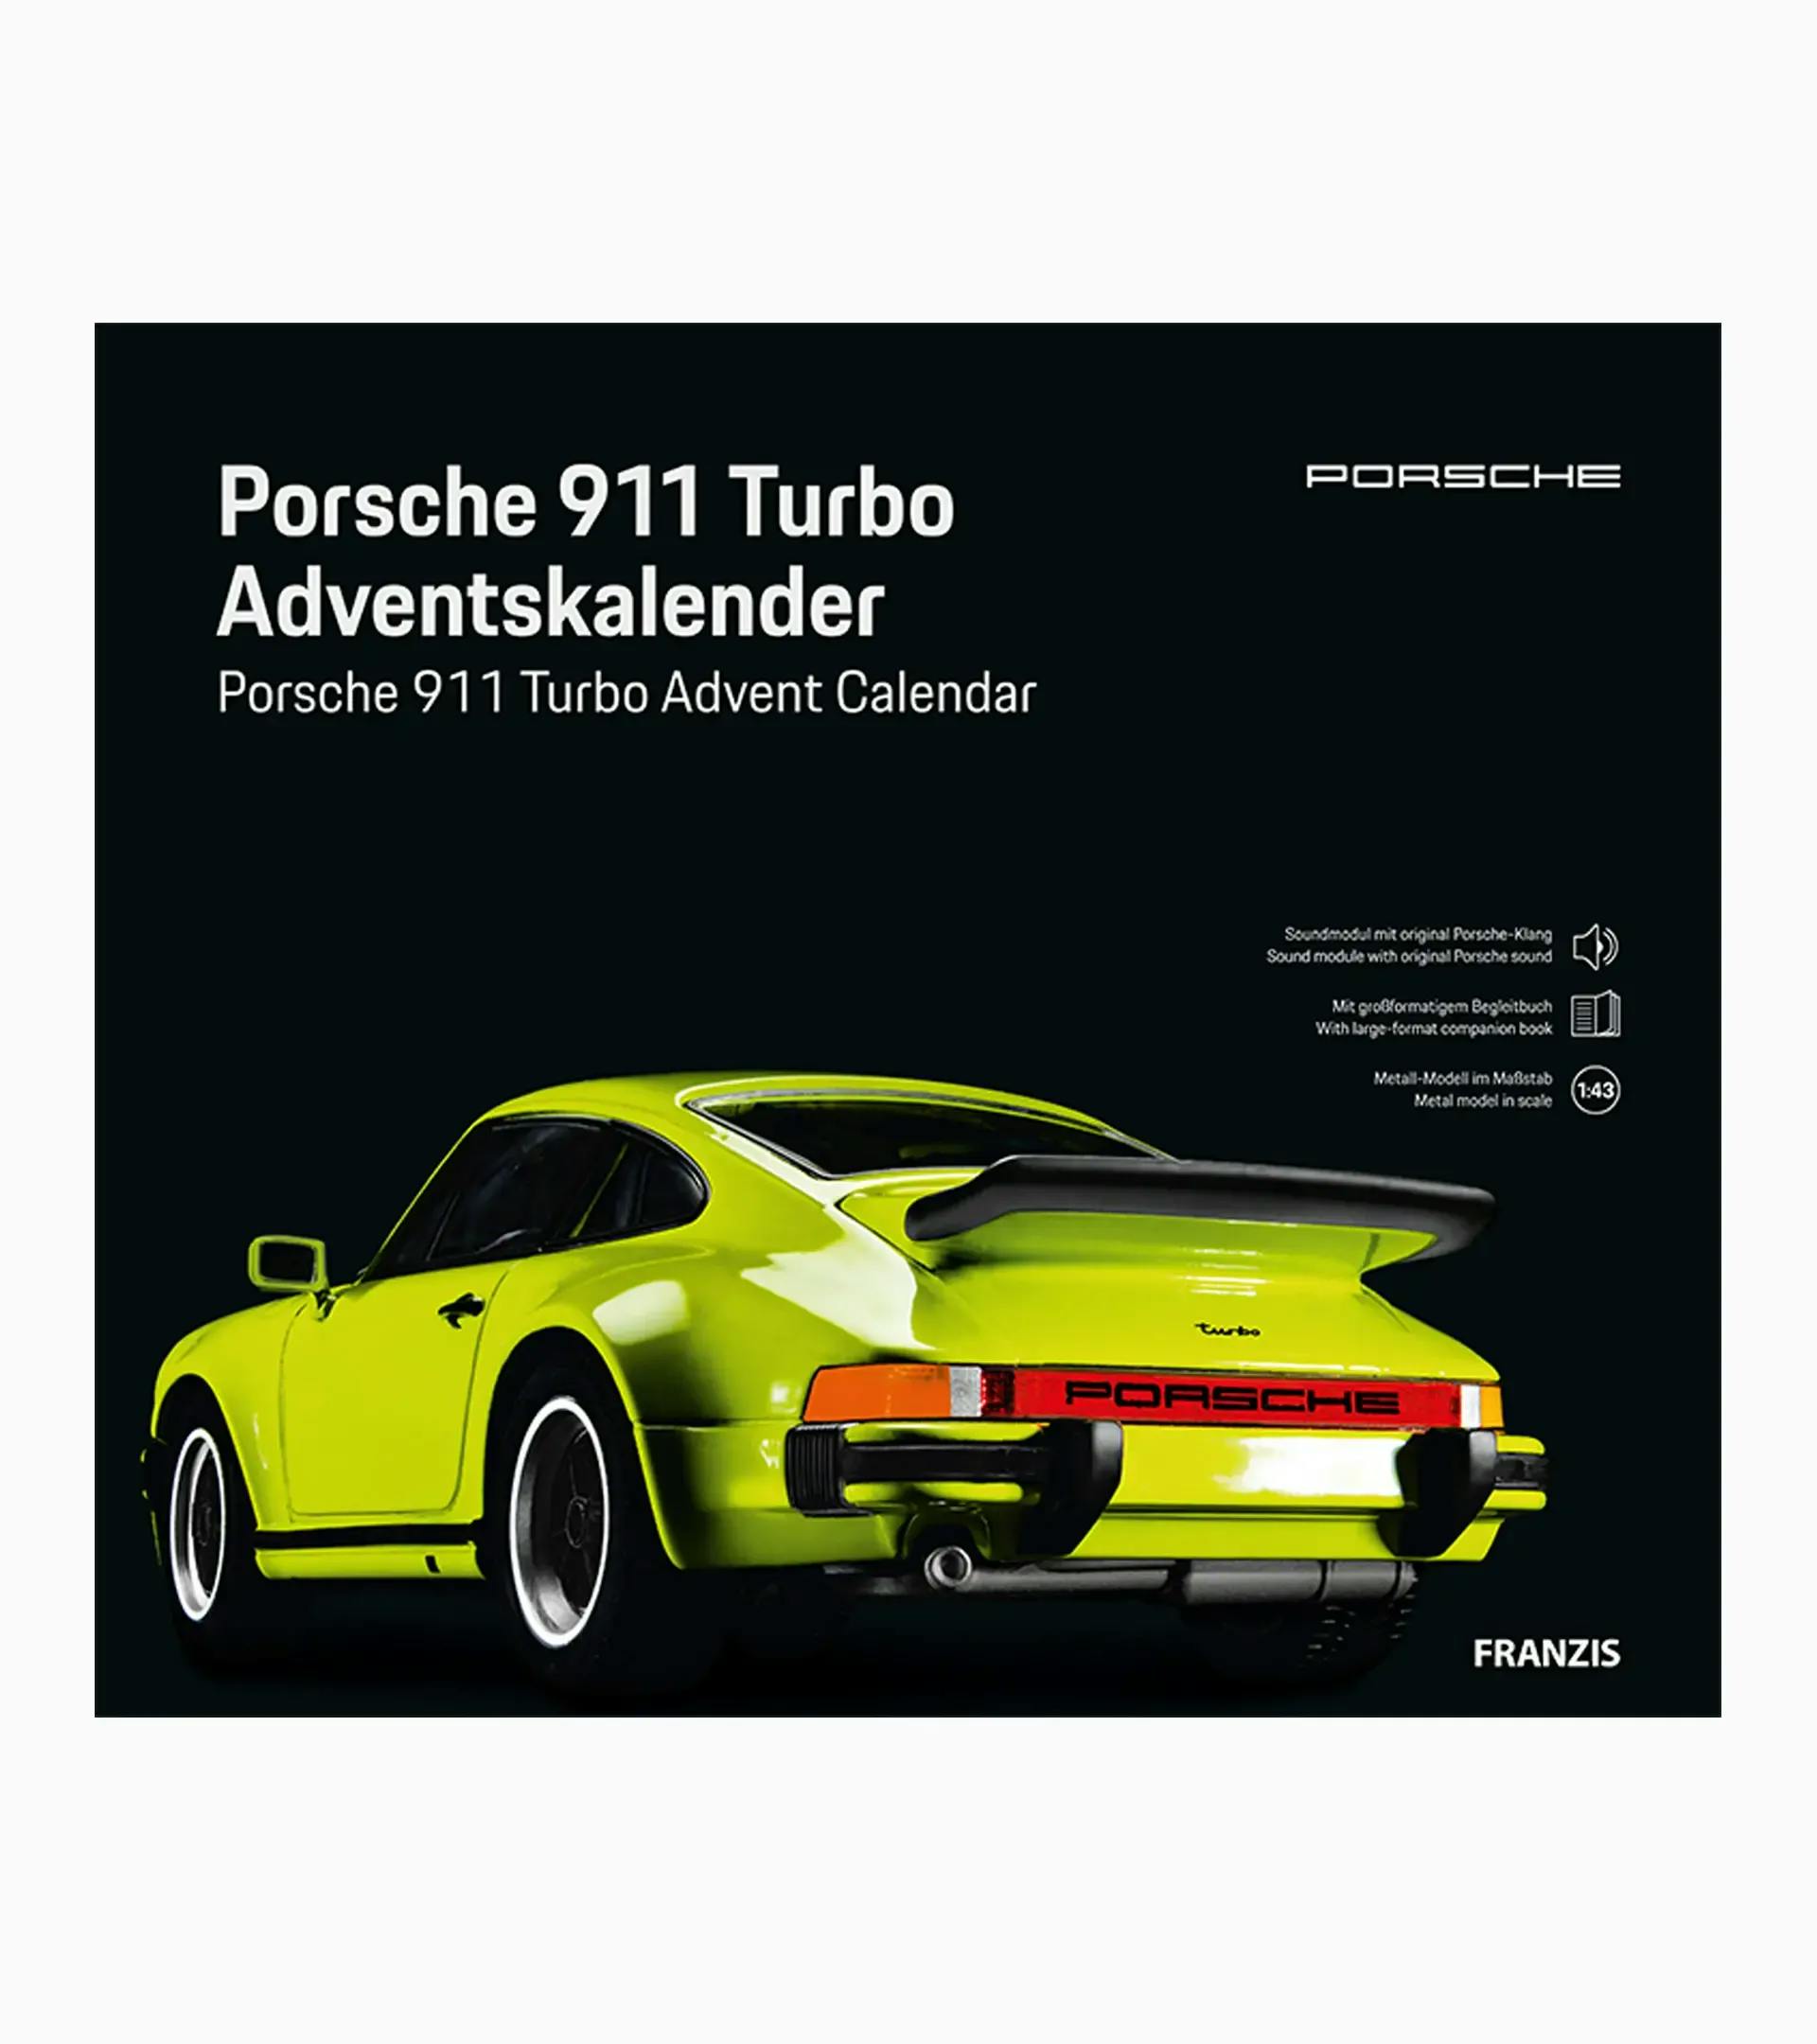 Porsche 911 Turbo Adventskalender 2